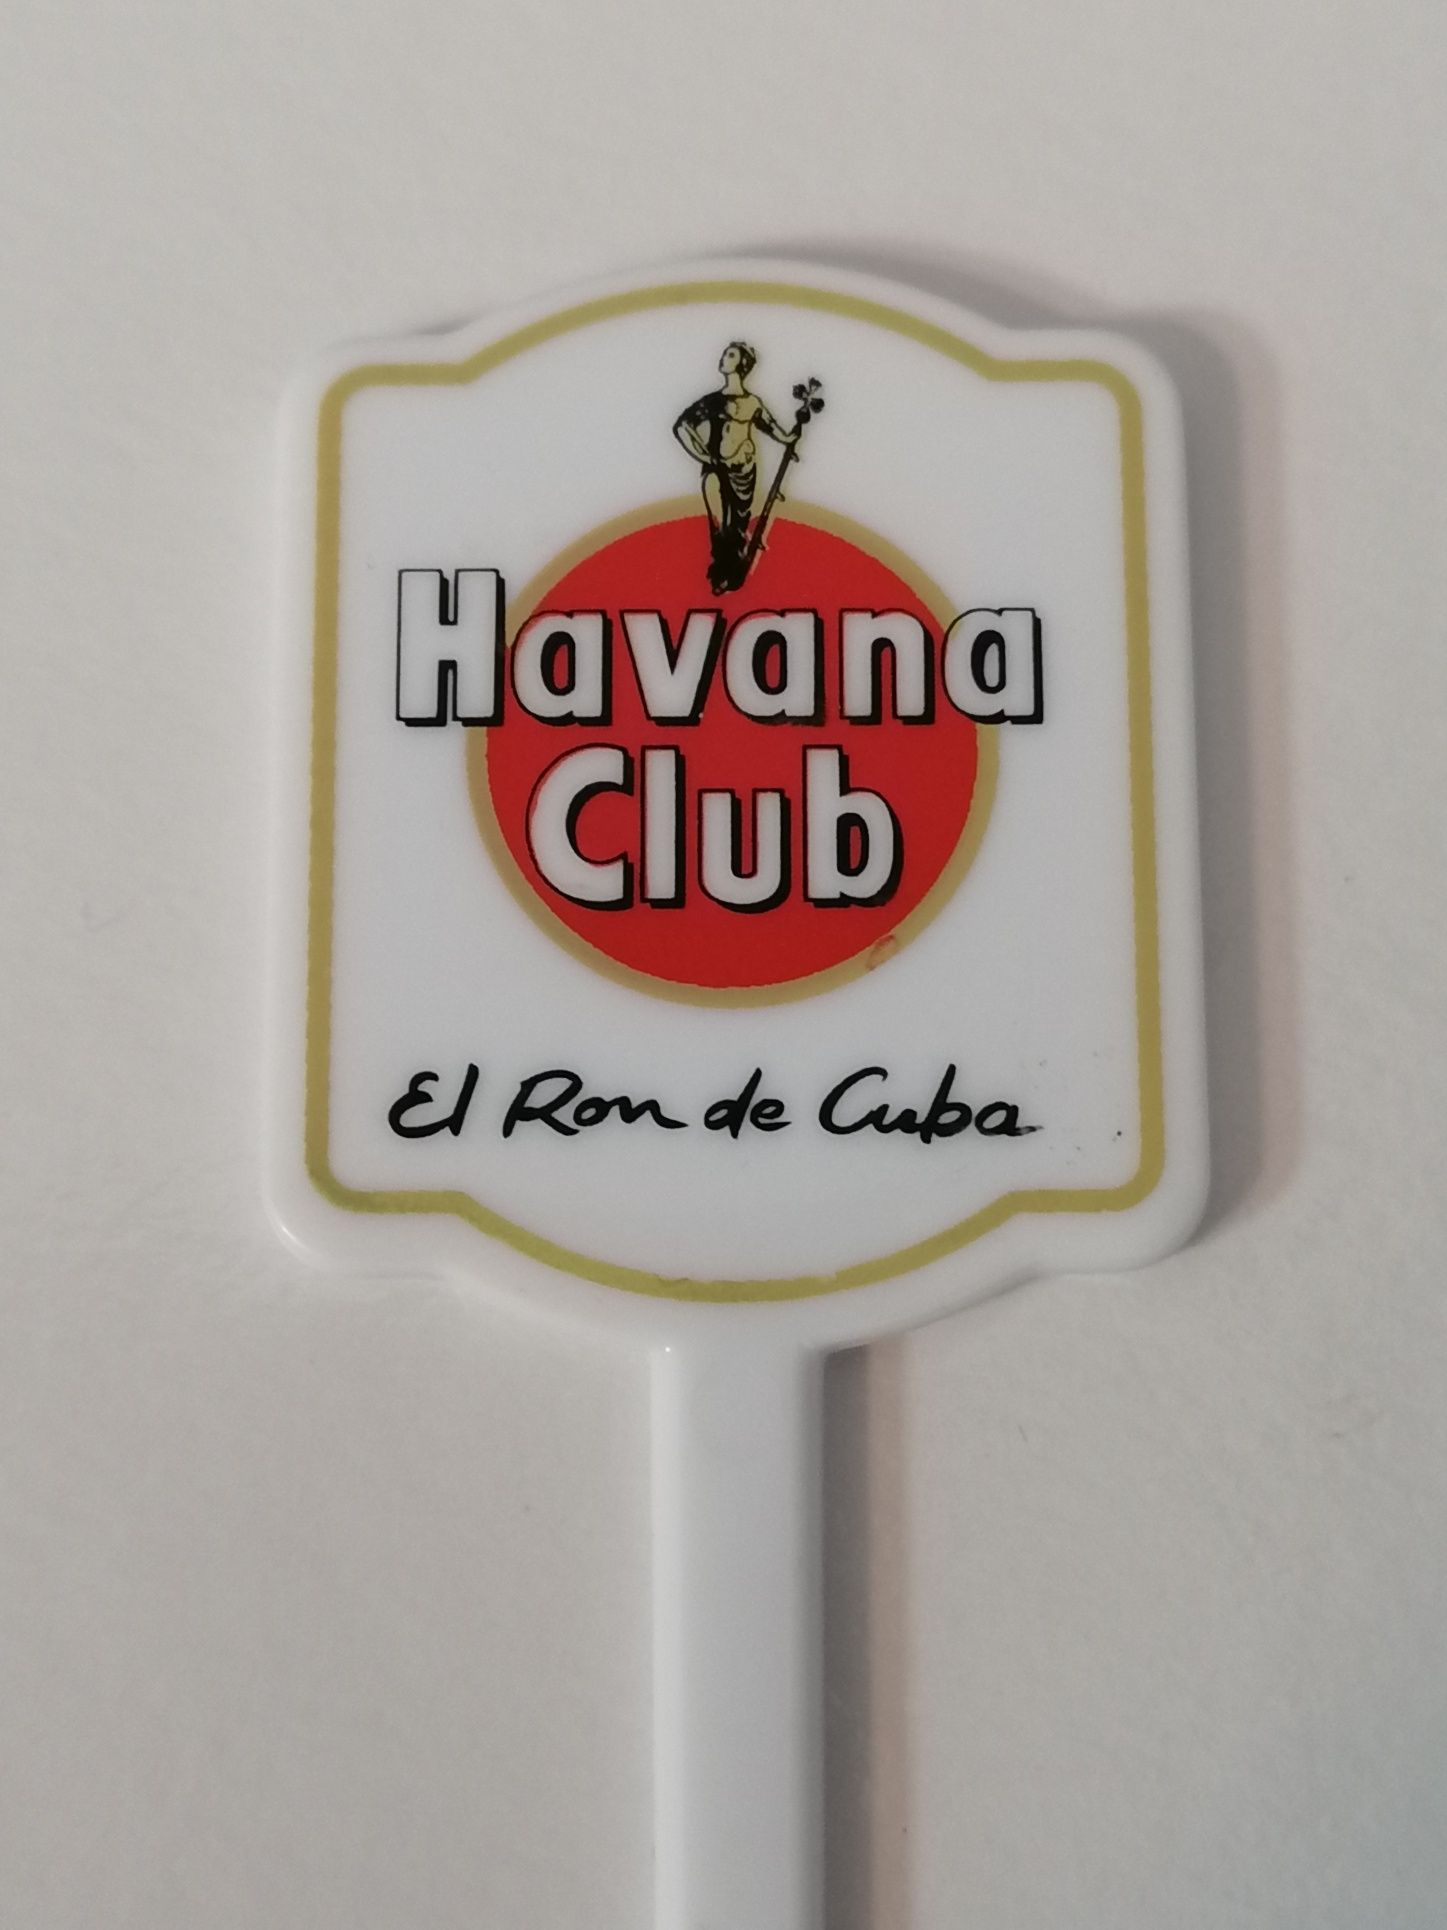 Sticker publicidade bebidas, Havana rum, Sheraton e Bejaparque hotel